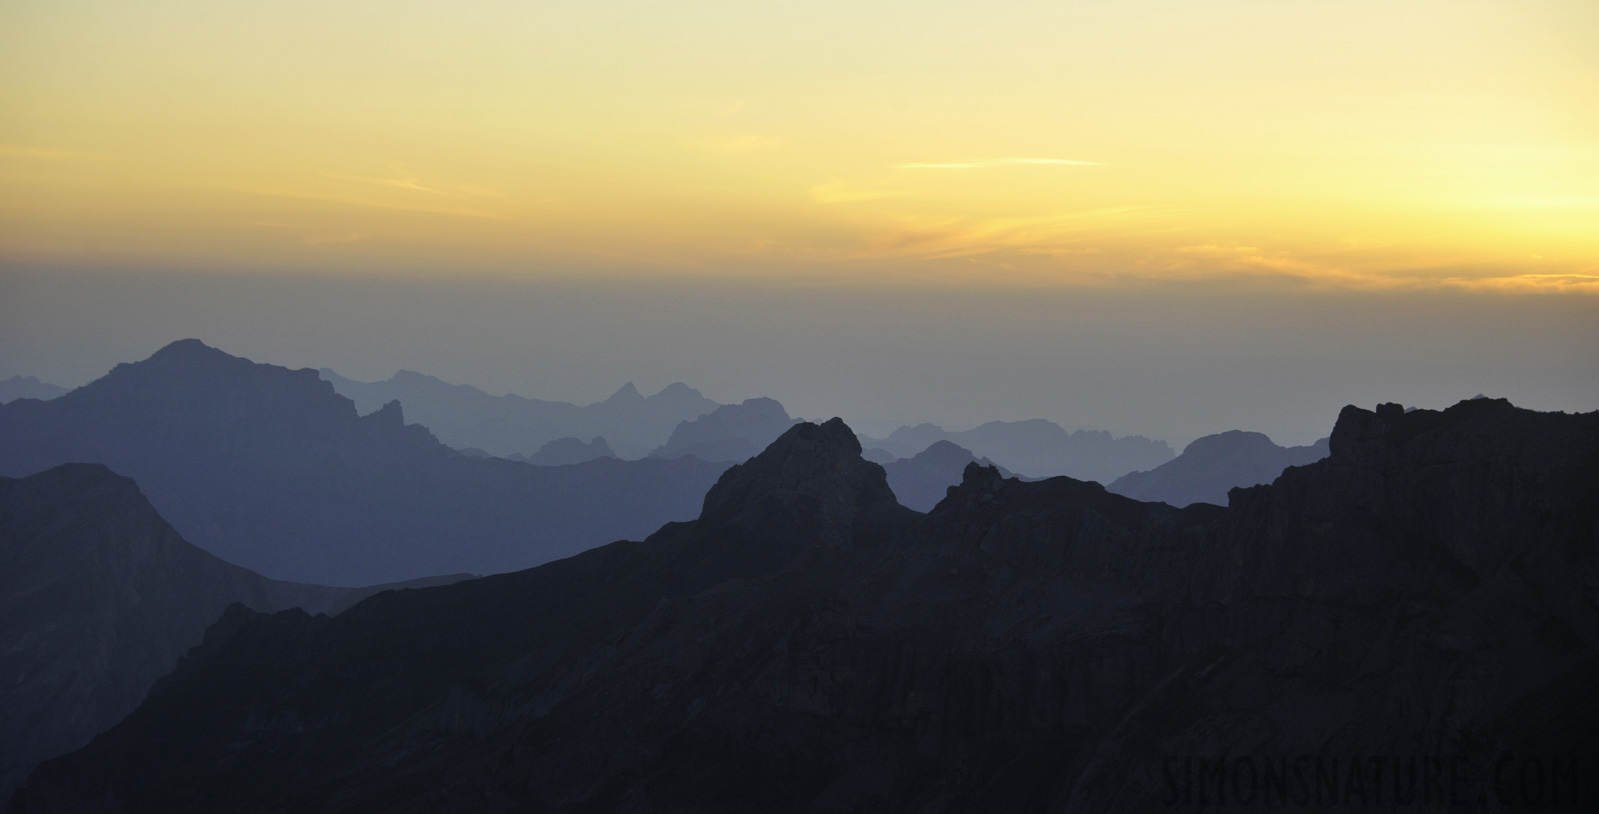 Sonnenuntergang auf 2840 m über Meer 